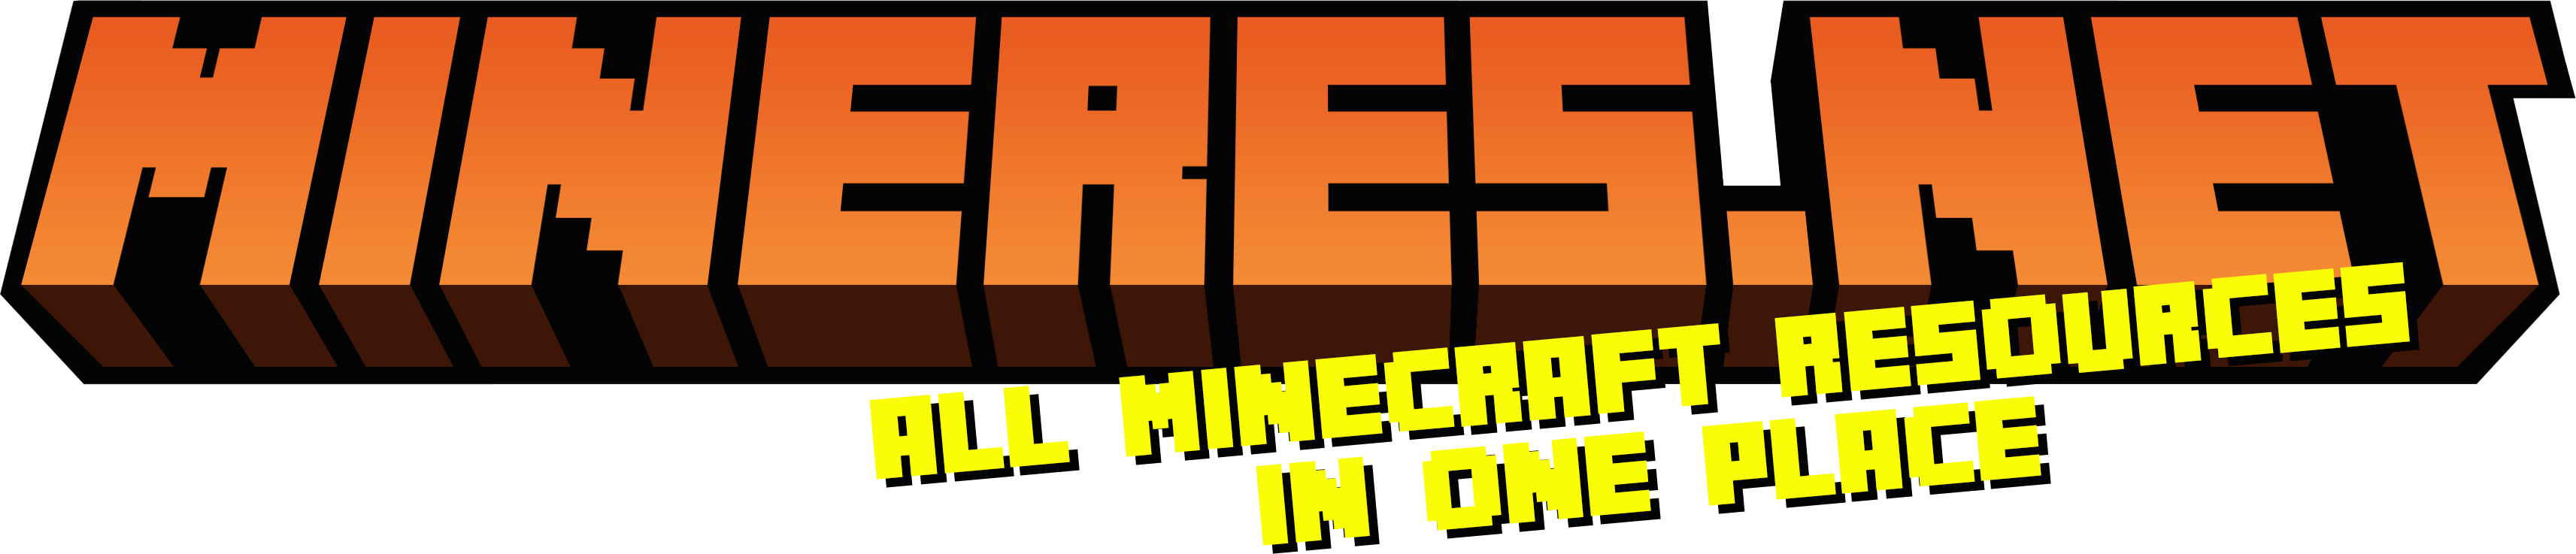 MineRes.net - Minecraft Resources DB